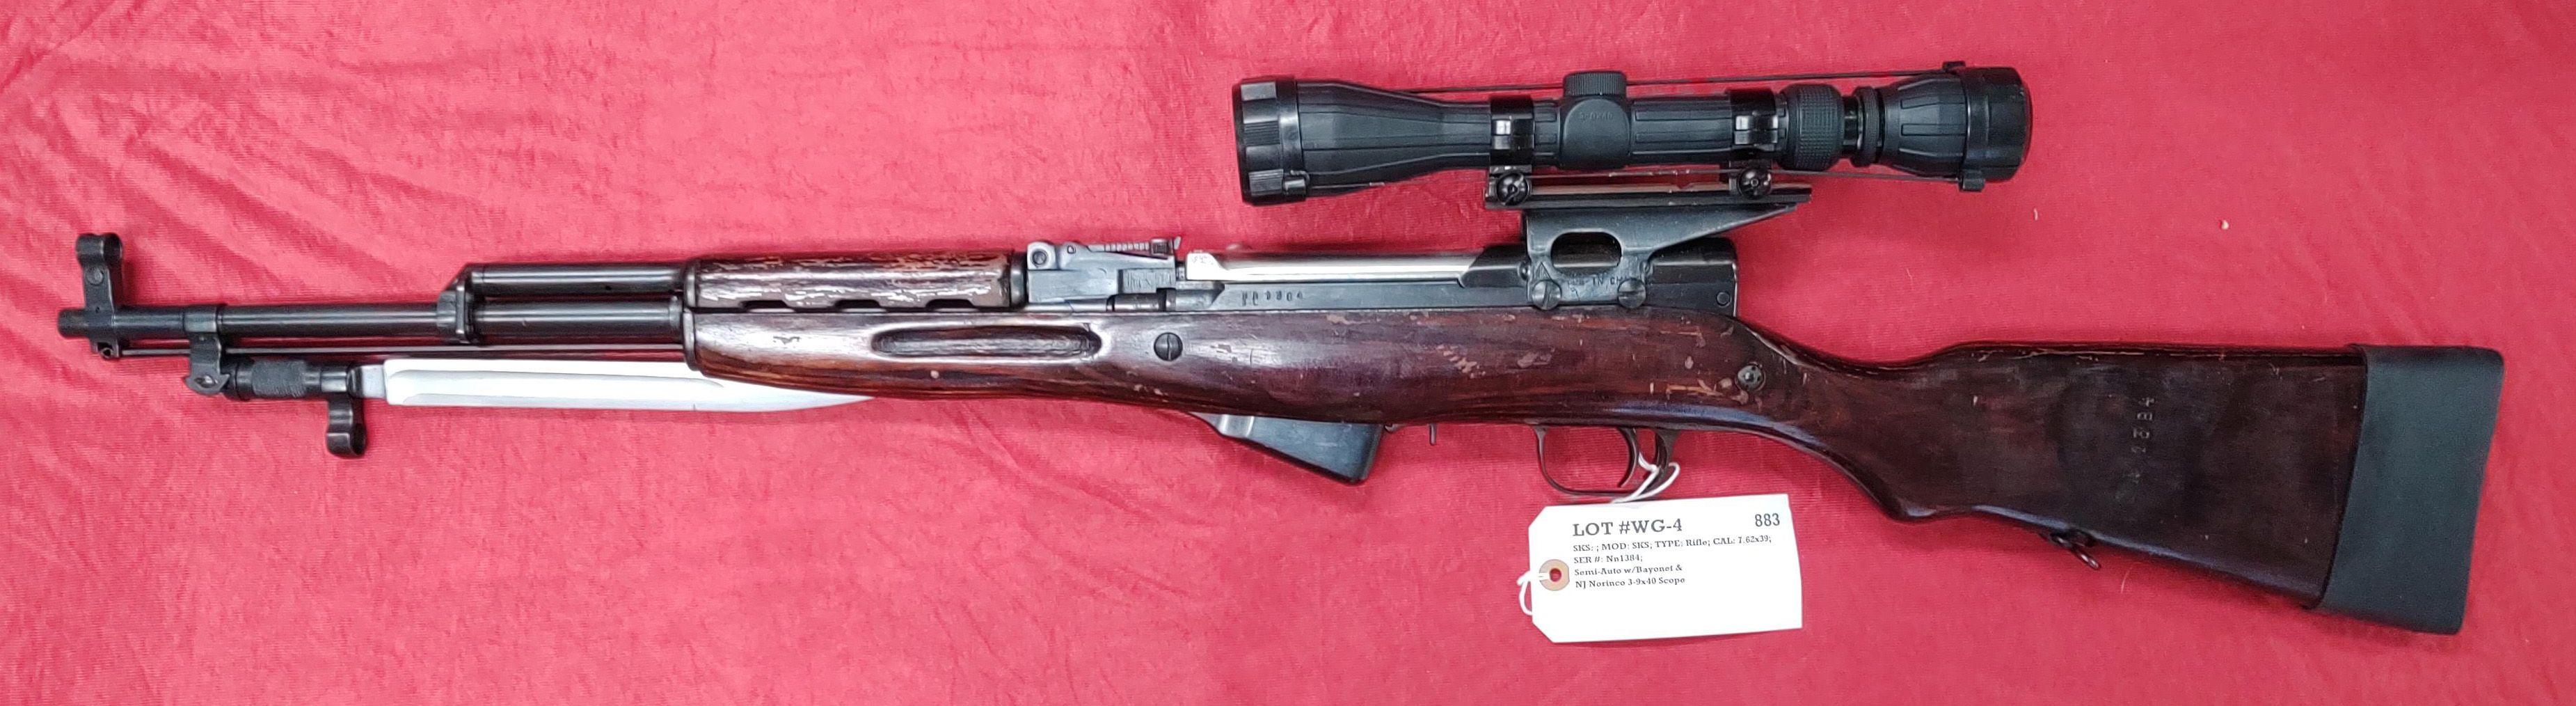 SKS (St. Albany, VT) Ser #Nn1384 Rifle 7.62x39